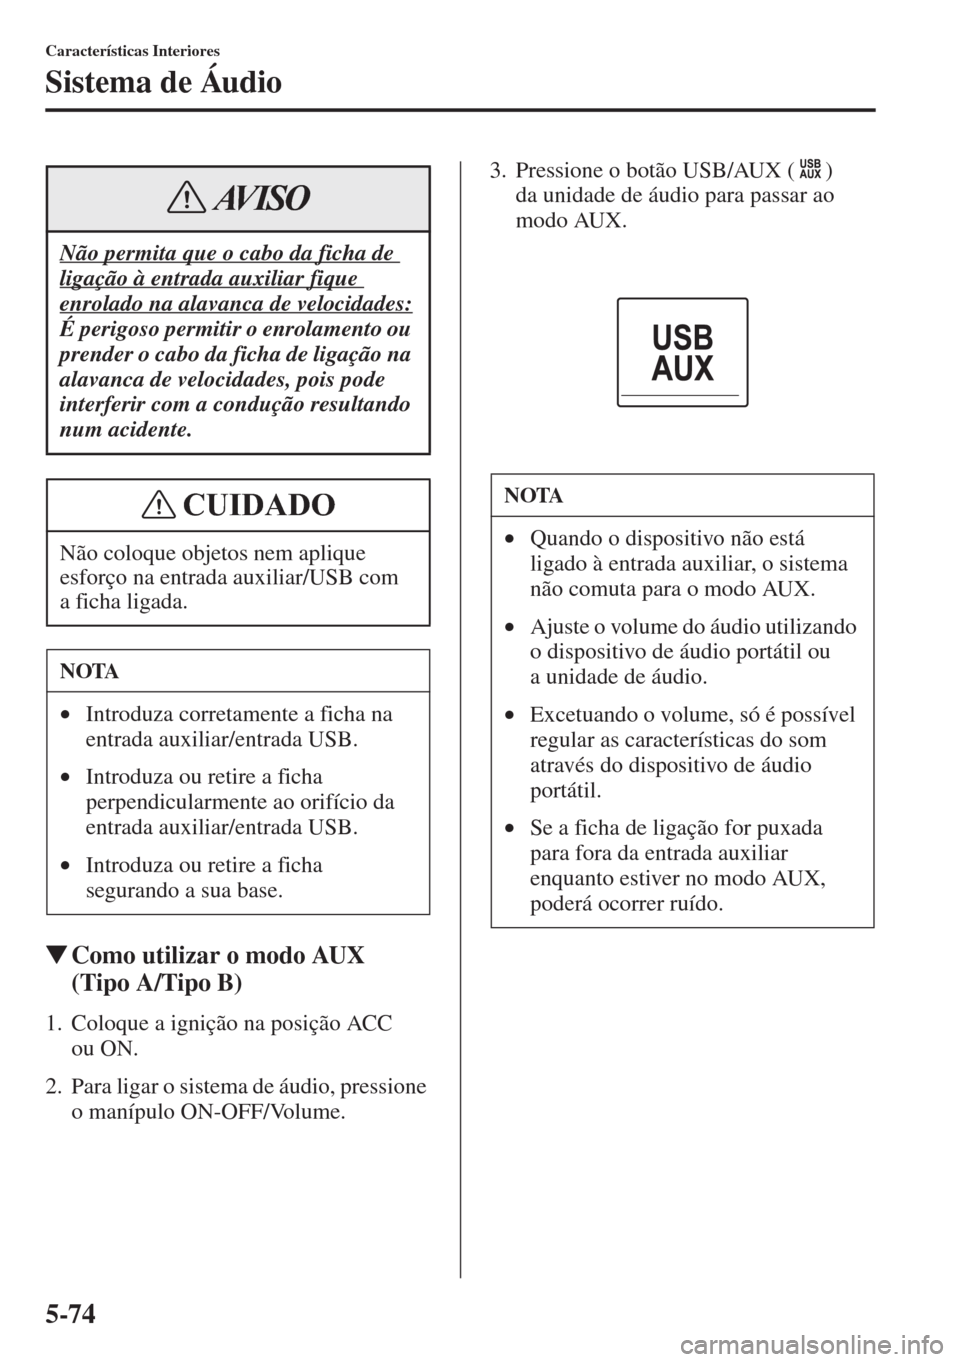 MAZDA MODEL CX-5 2015  Manual do proprietário (in Portuguese) 5-74
Características Interiores
Sistema de Áudio
�WComo utilizar o modo AUX 
(Tipo A/Tipo B)
1. Coloque a ignição na posição ACC 
ou ON.
2. Para ligar o sistema de áudio, pressione 
o manípulo